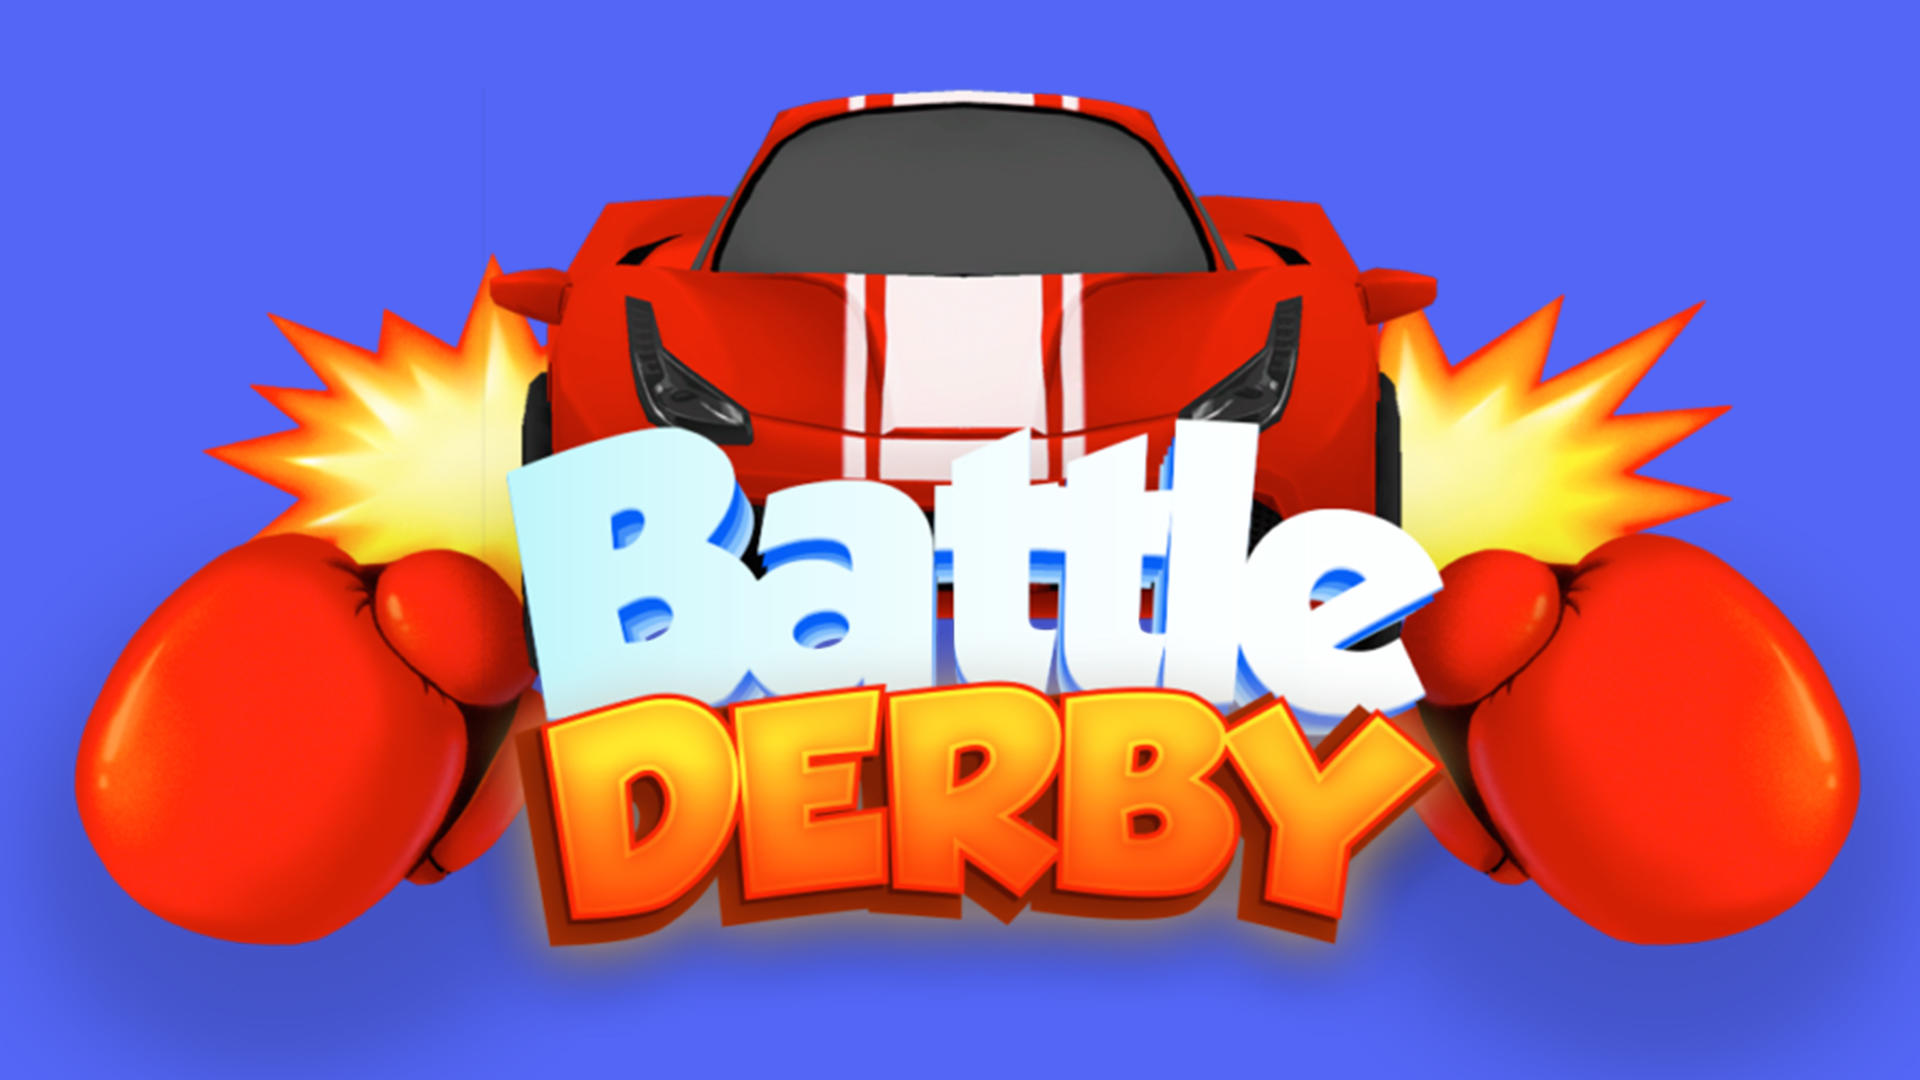 Banner of Derby di battaglia 110